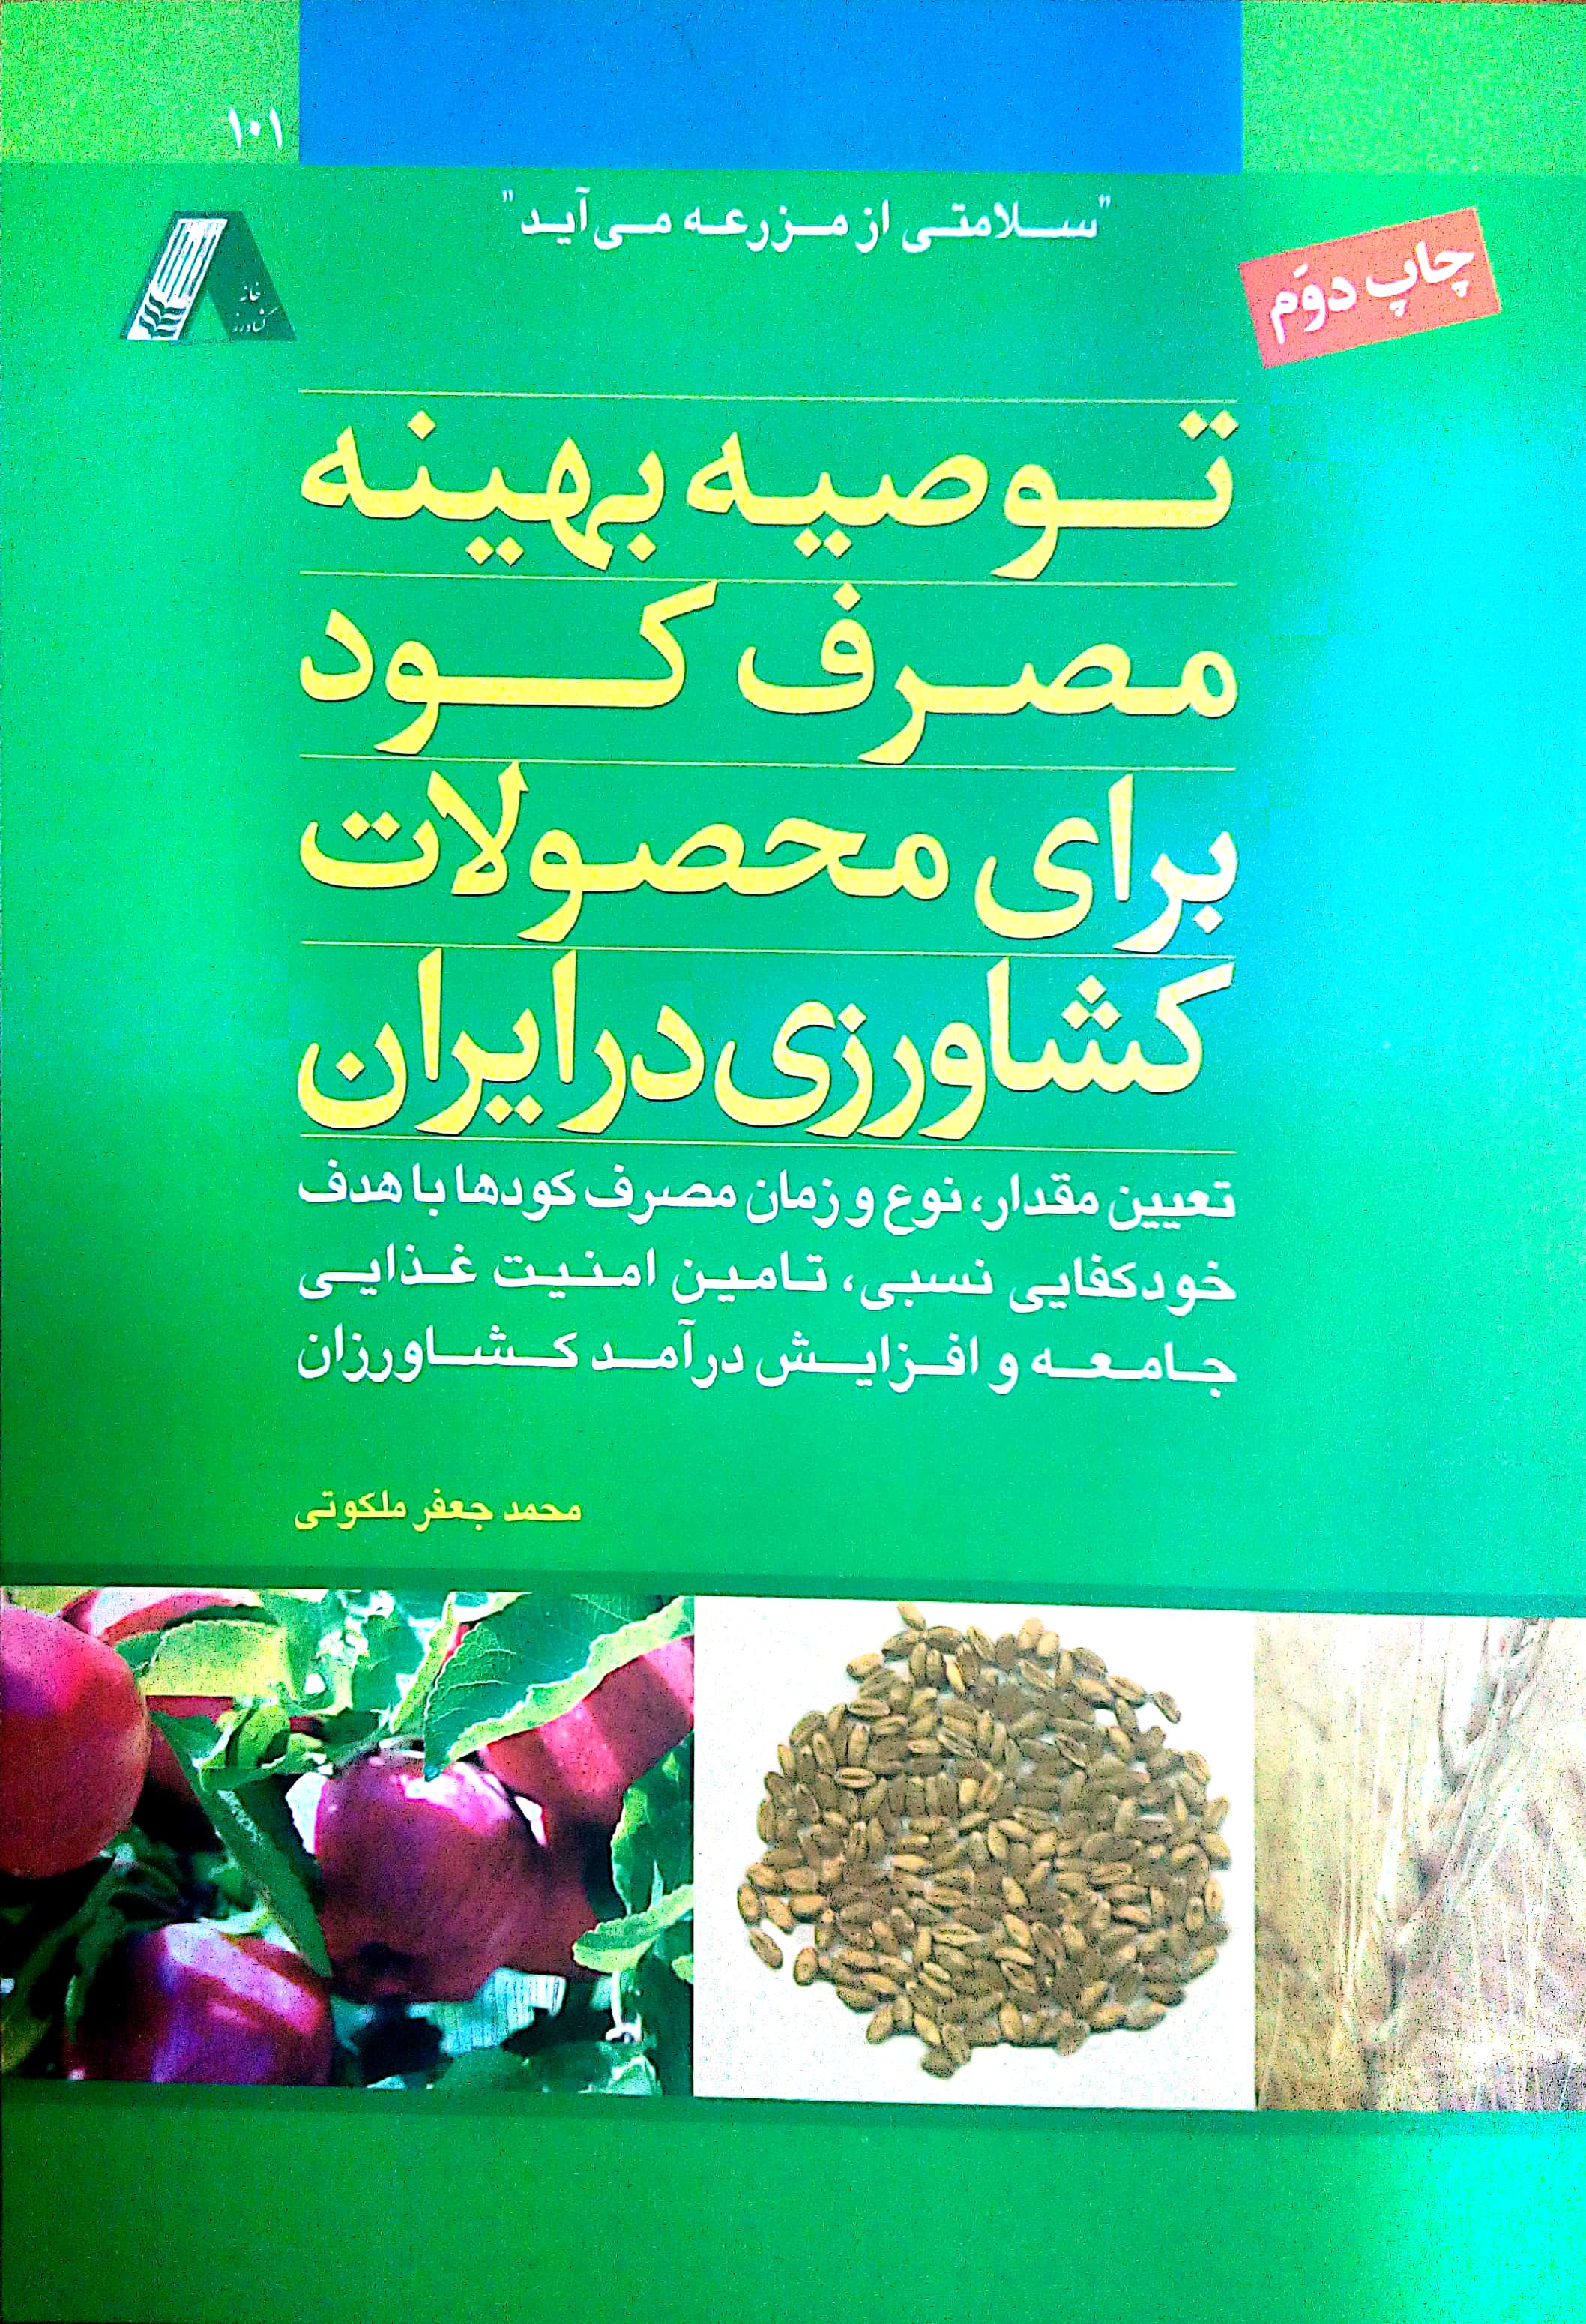 کتاب توصیه بهینه مصرف کود برای محصولات کشاورزی در ایران از دکتر محمد جواد ملکوتی